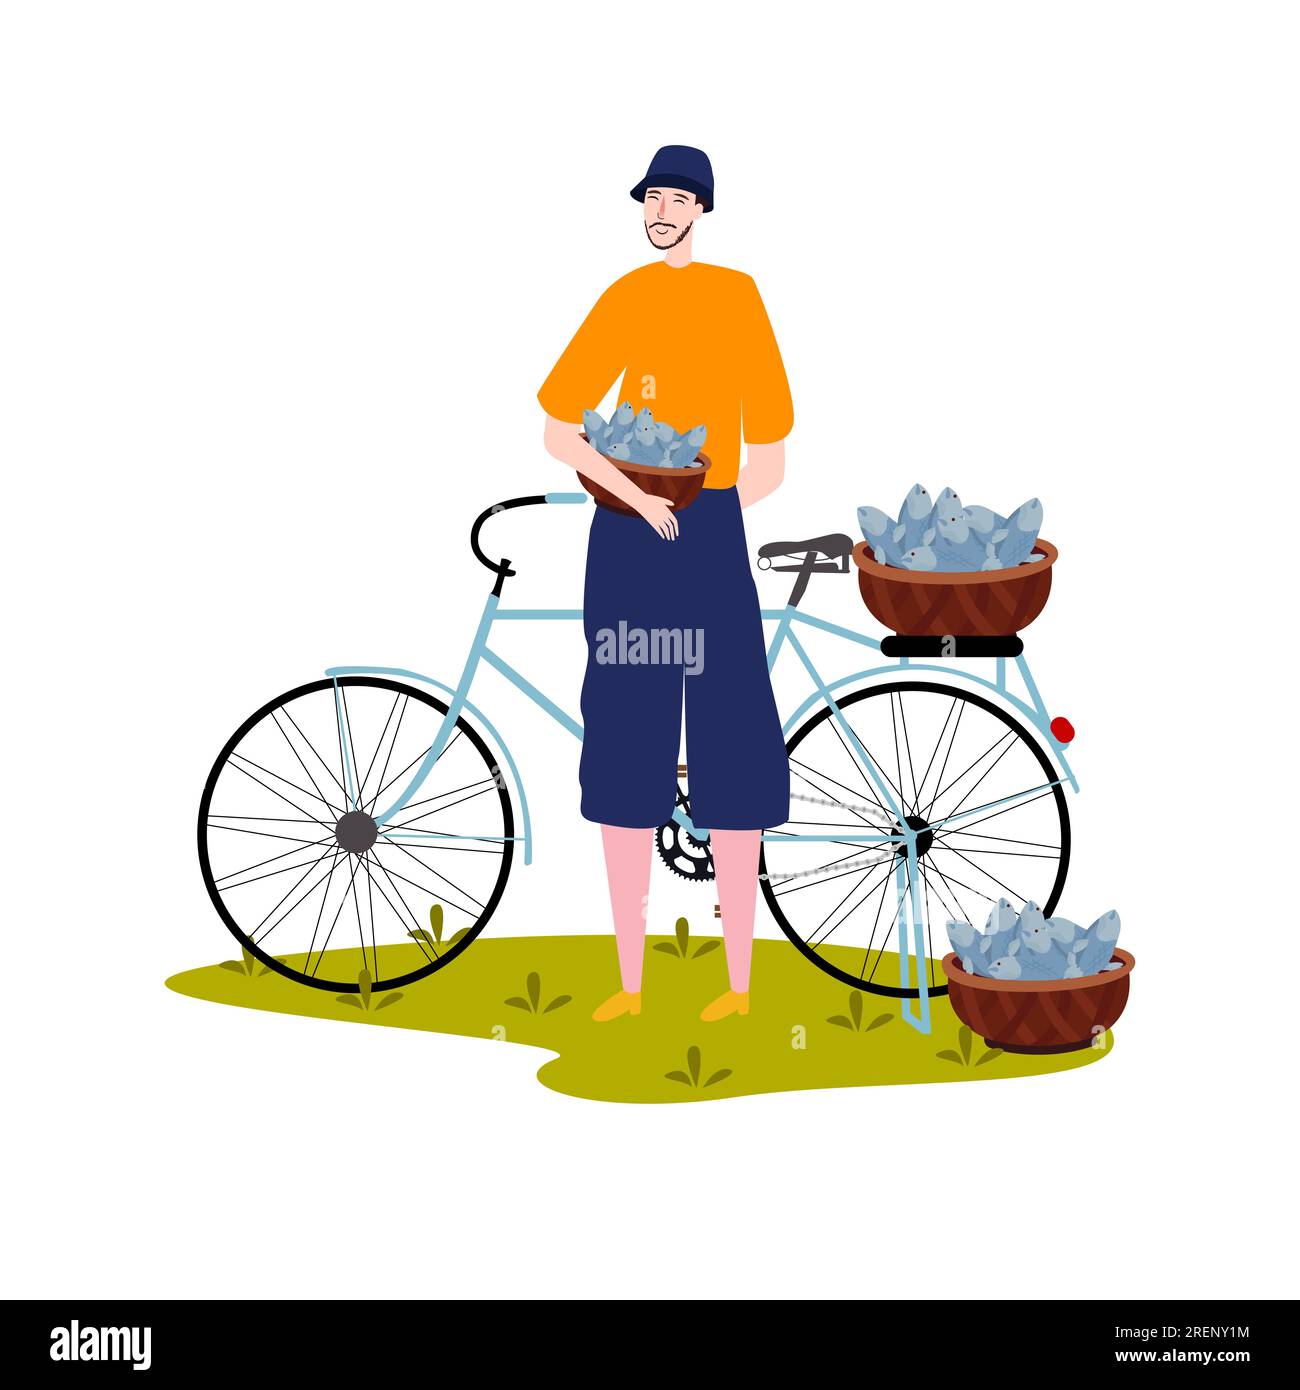 homme poissonnier travailleur offrant le marché des consommateurs commerciaux en plein air avec le transport de vélo Illustration de Vecteur